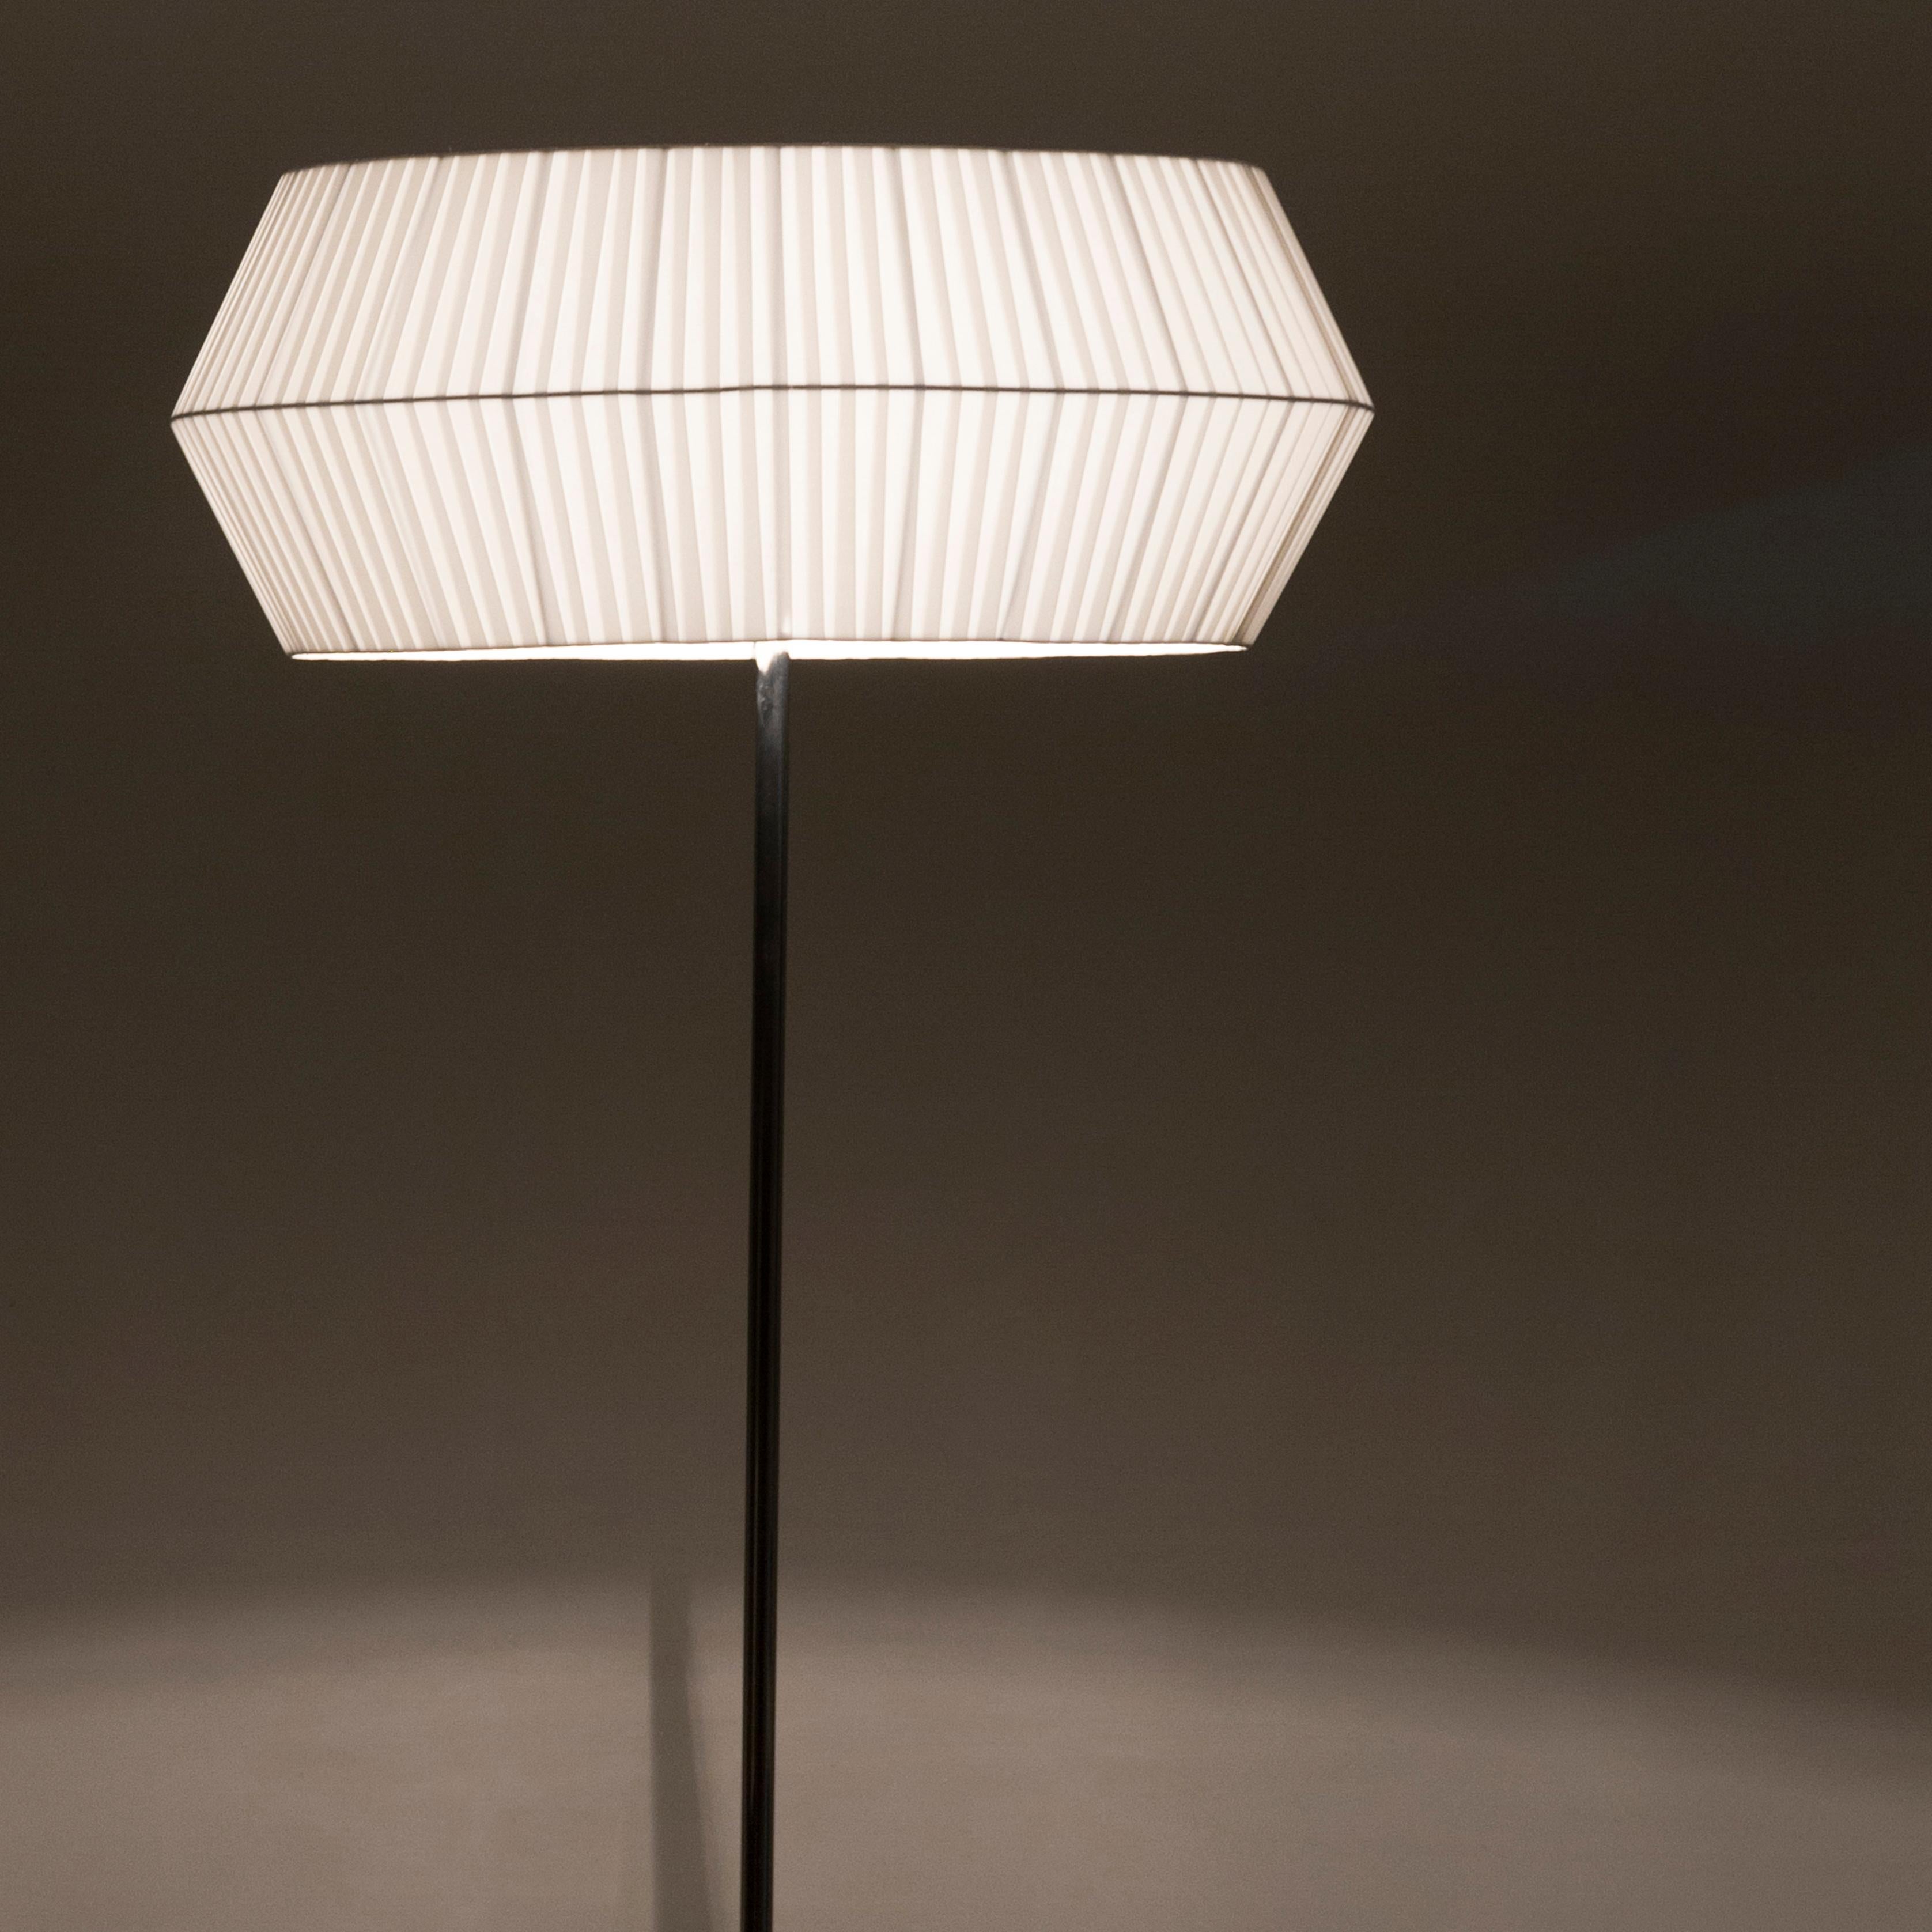 Lampadaire Sublime, Collection Contemporary, Fabriqué à la main au Portugal - Europe par Greenapple.

Le lampadaire moderne Sublime donne vie à la vision créative grâce à son design méticuleux, élevant l'atmosphère de la maison moderne. Les détails